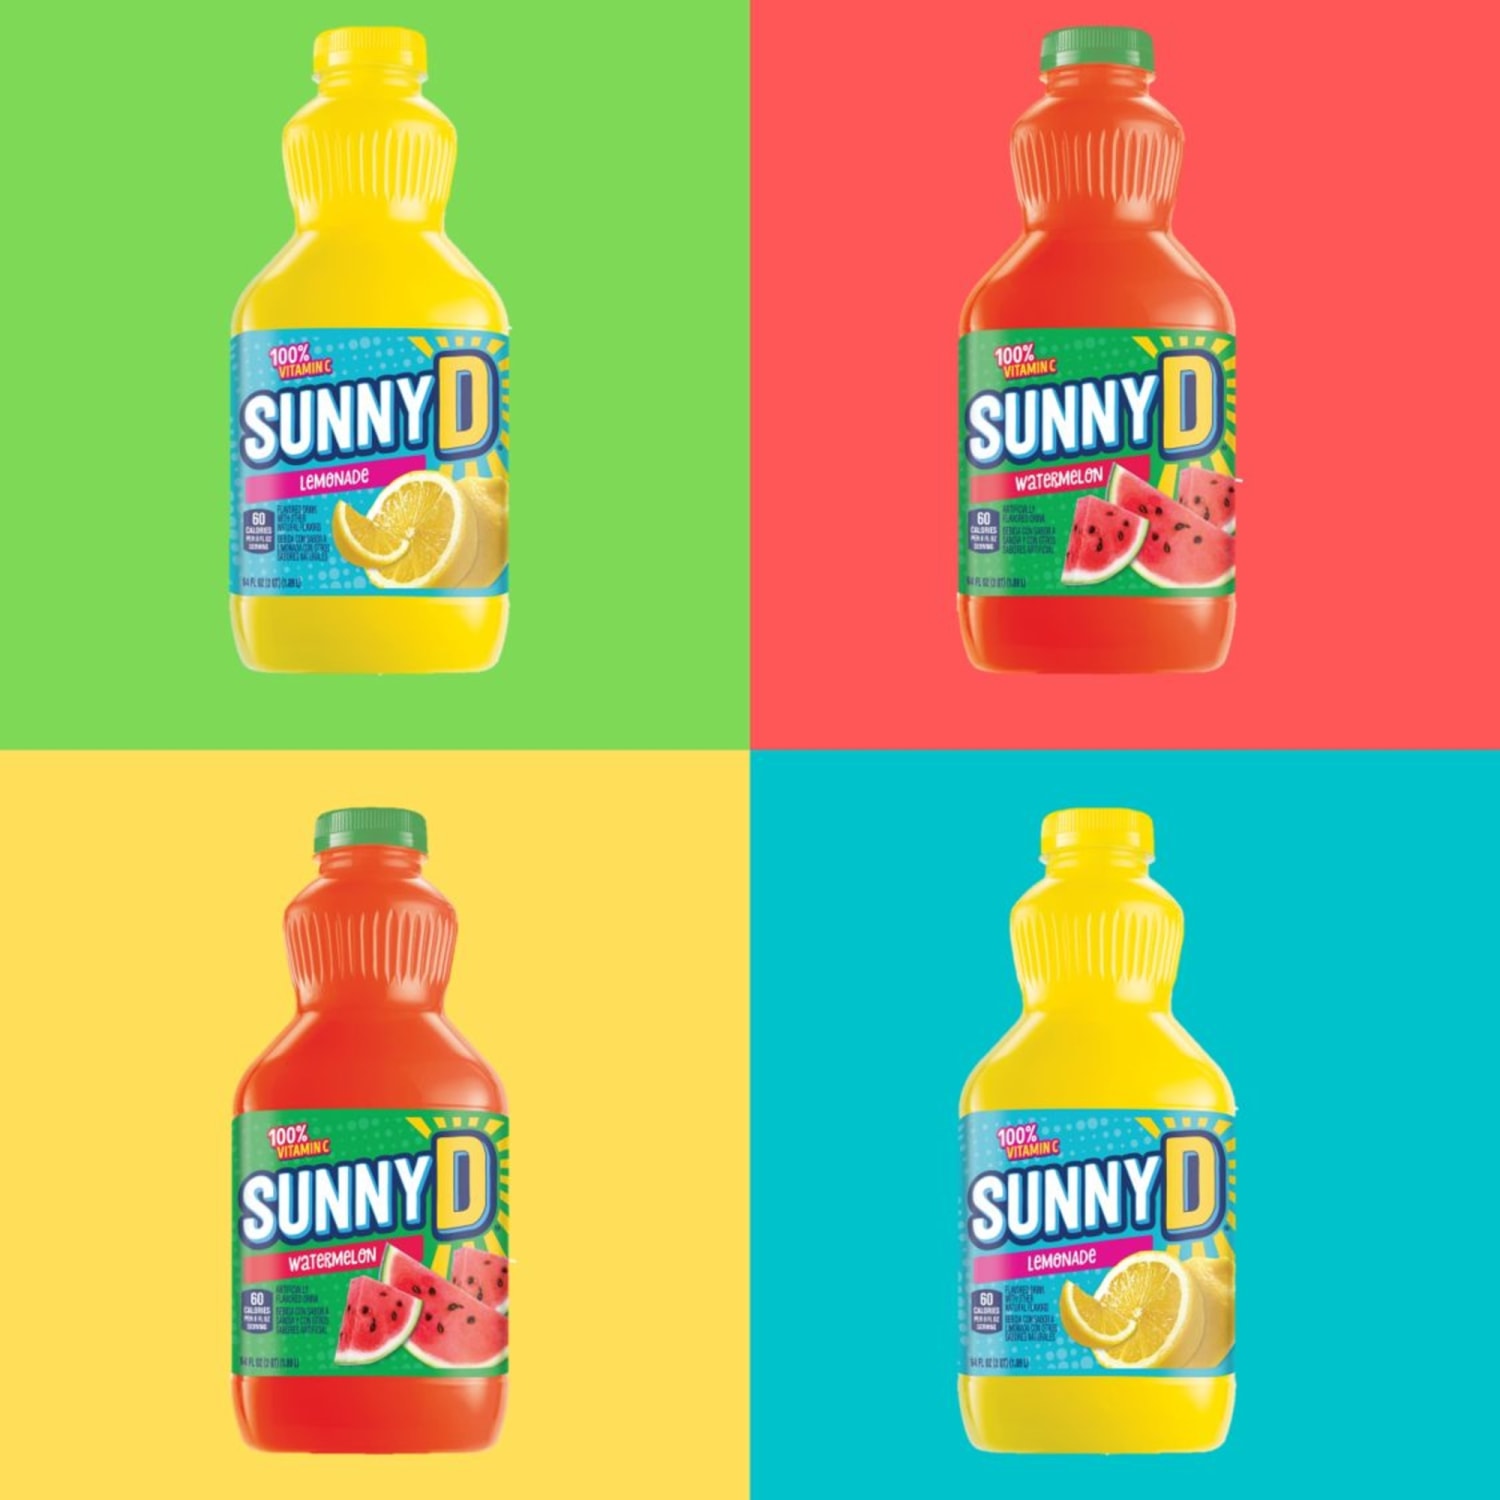 SunnyD brings back nostalgic flavors and we feel like a kid again